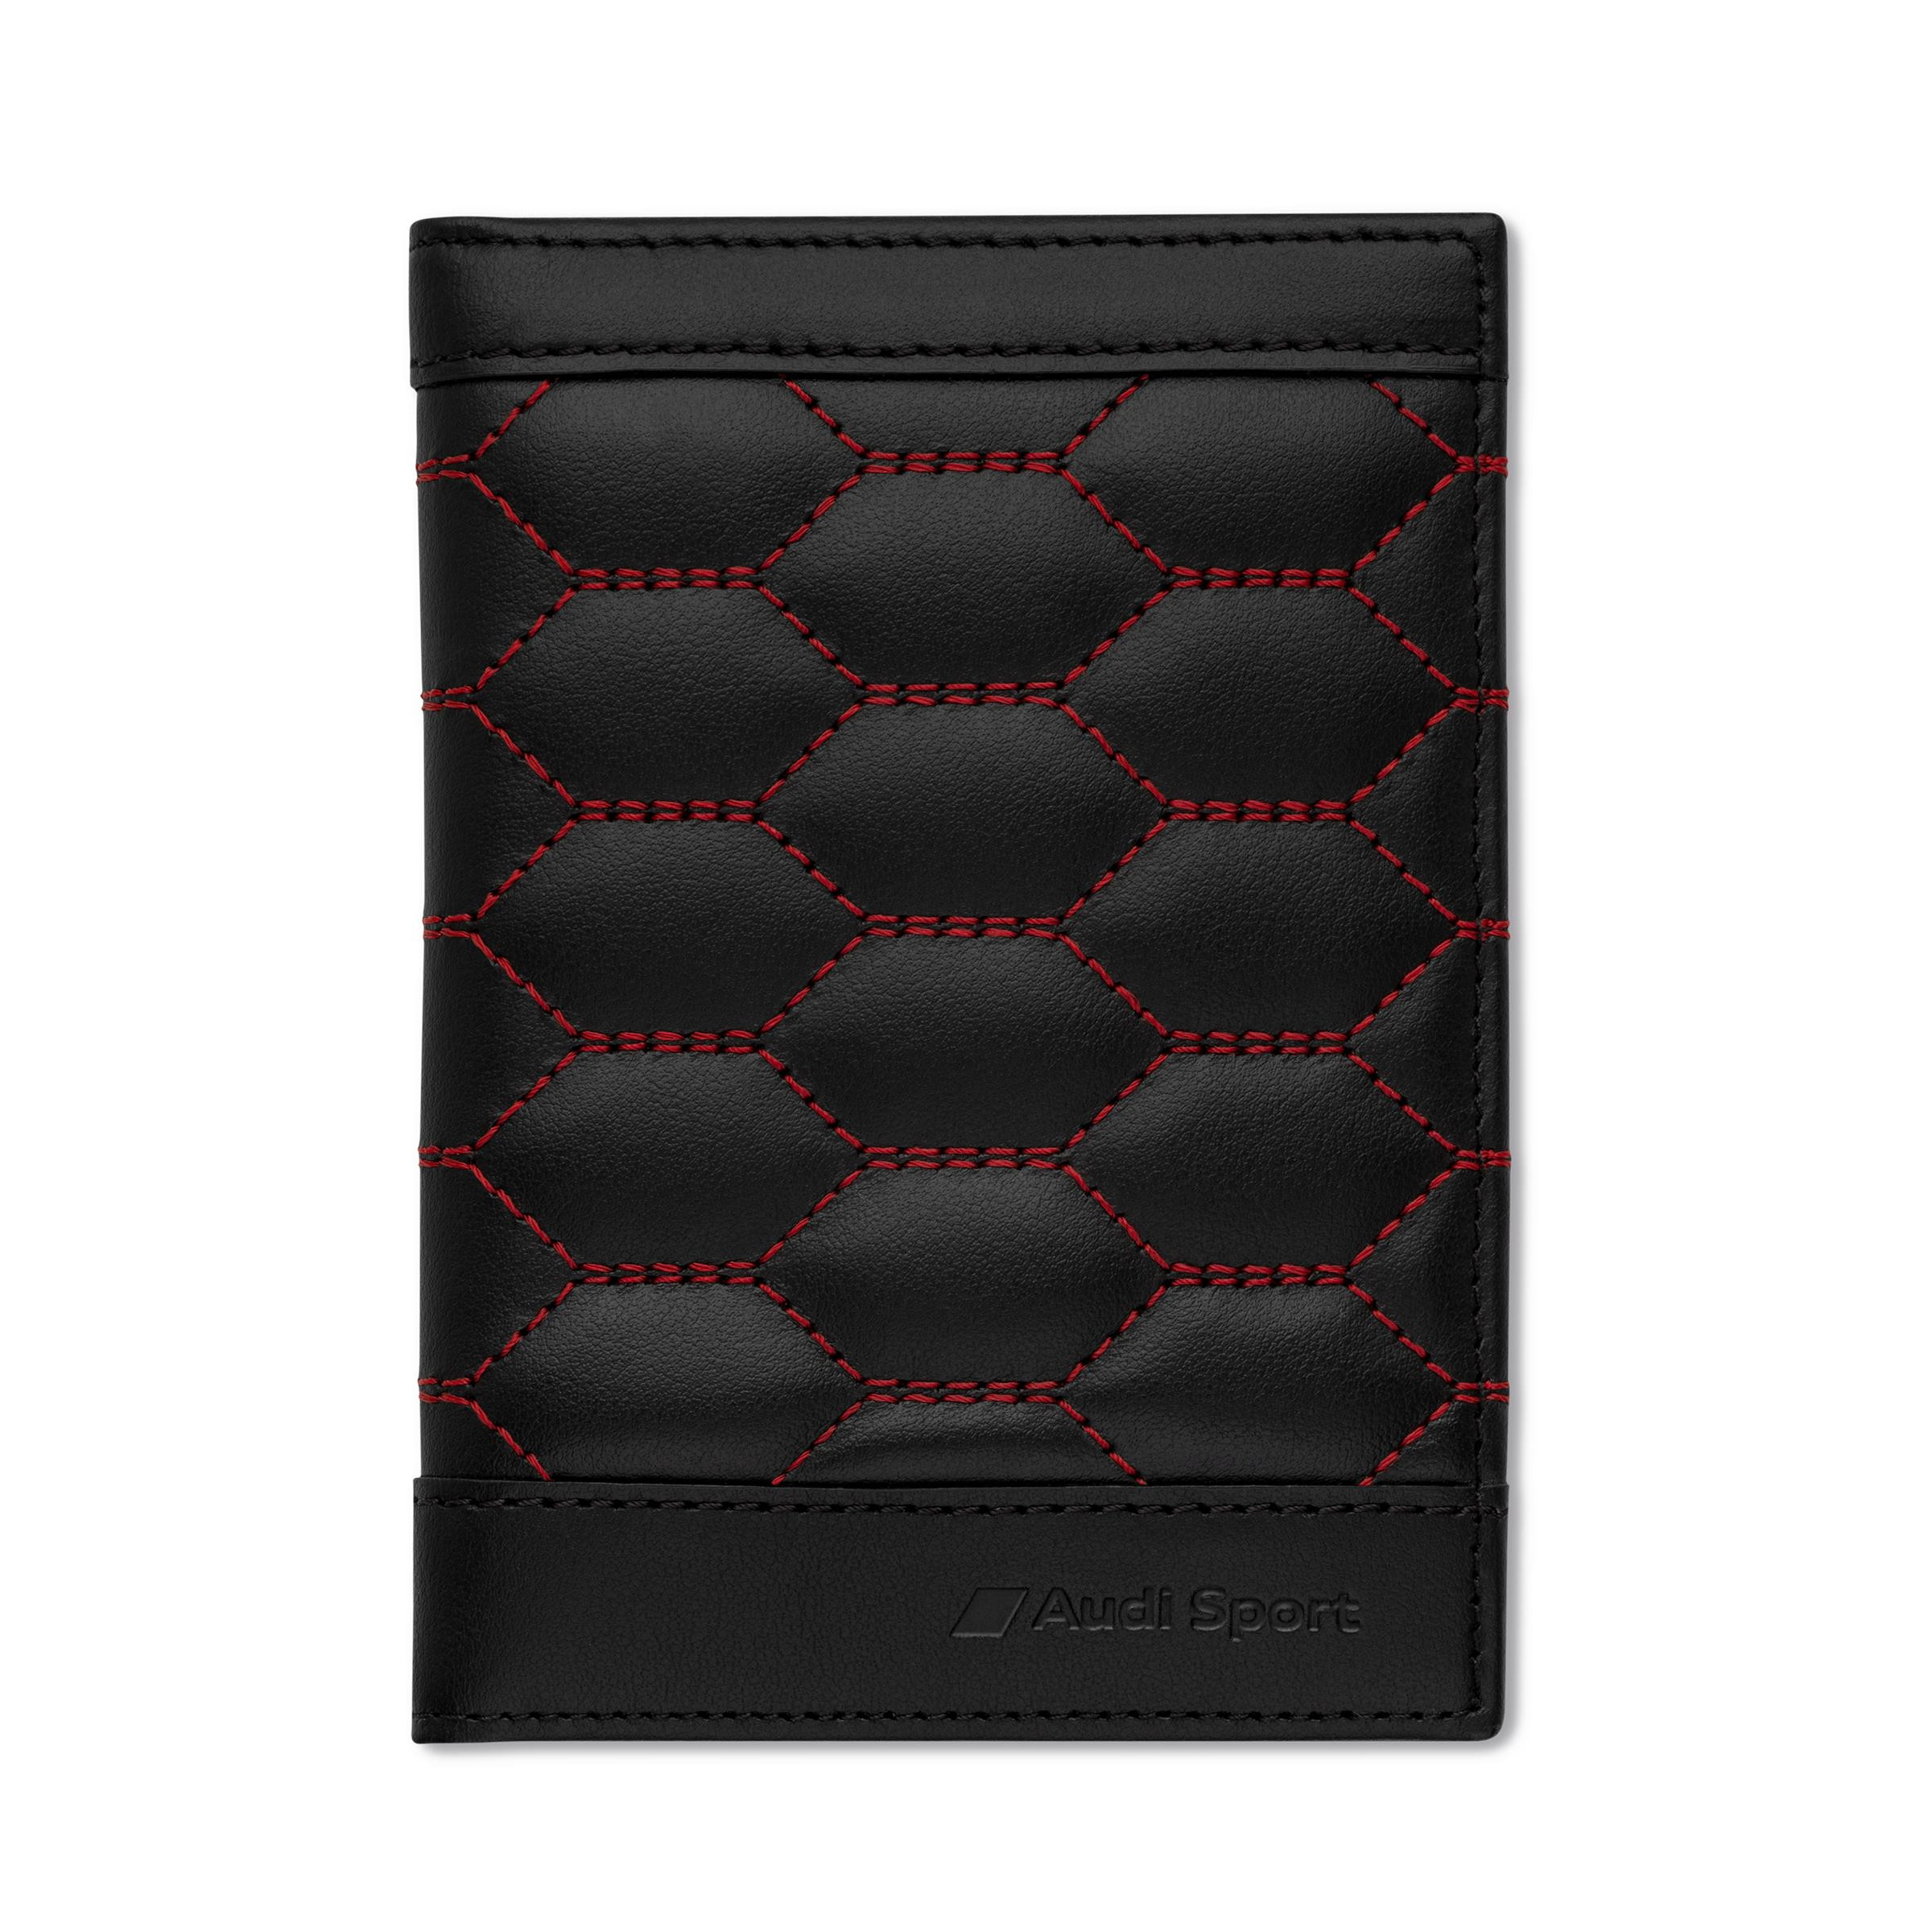 Audi Sport Fahrzeugscheinhülle Fahrzeugscheintasche Leder schwarz rot 3152201500